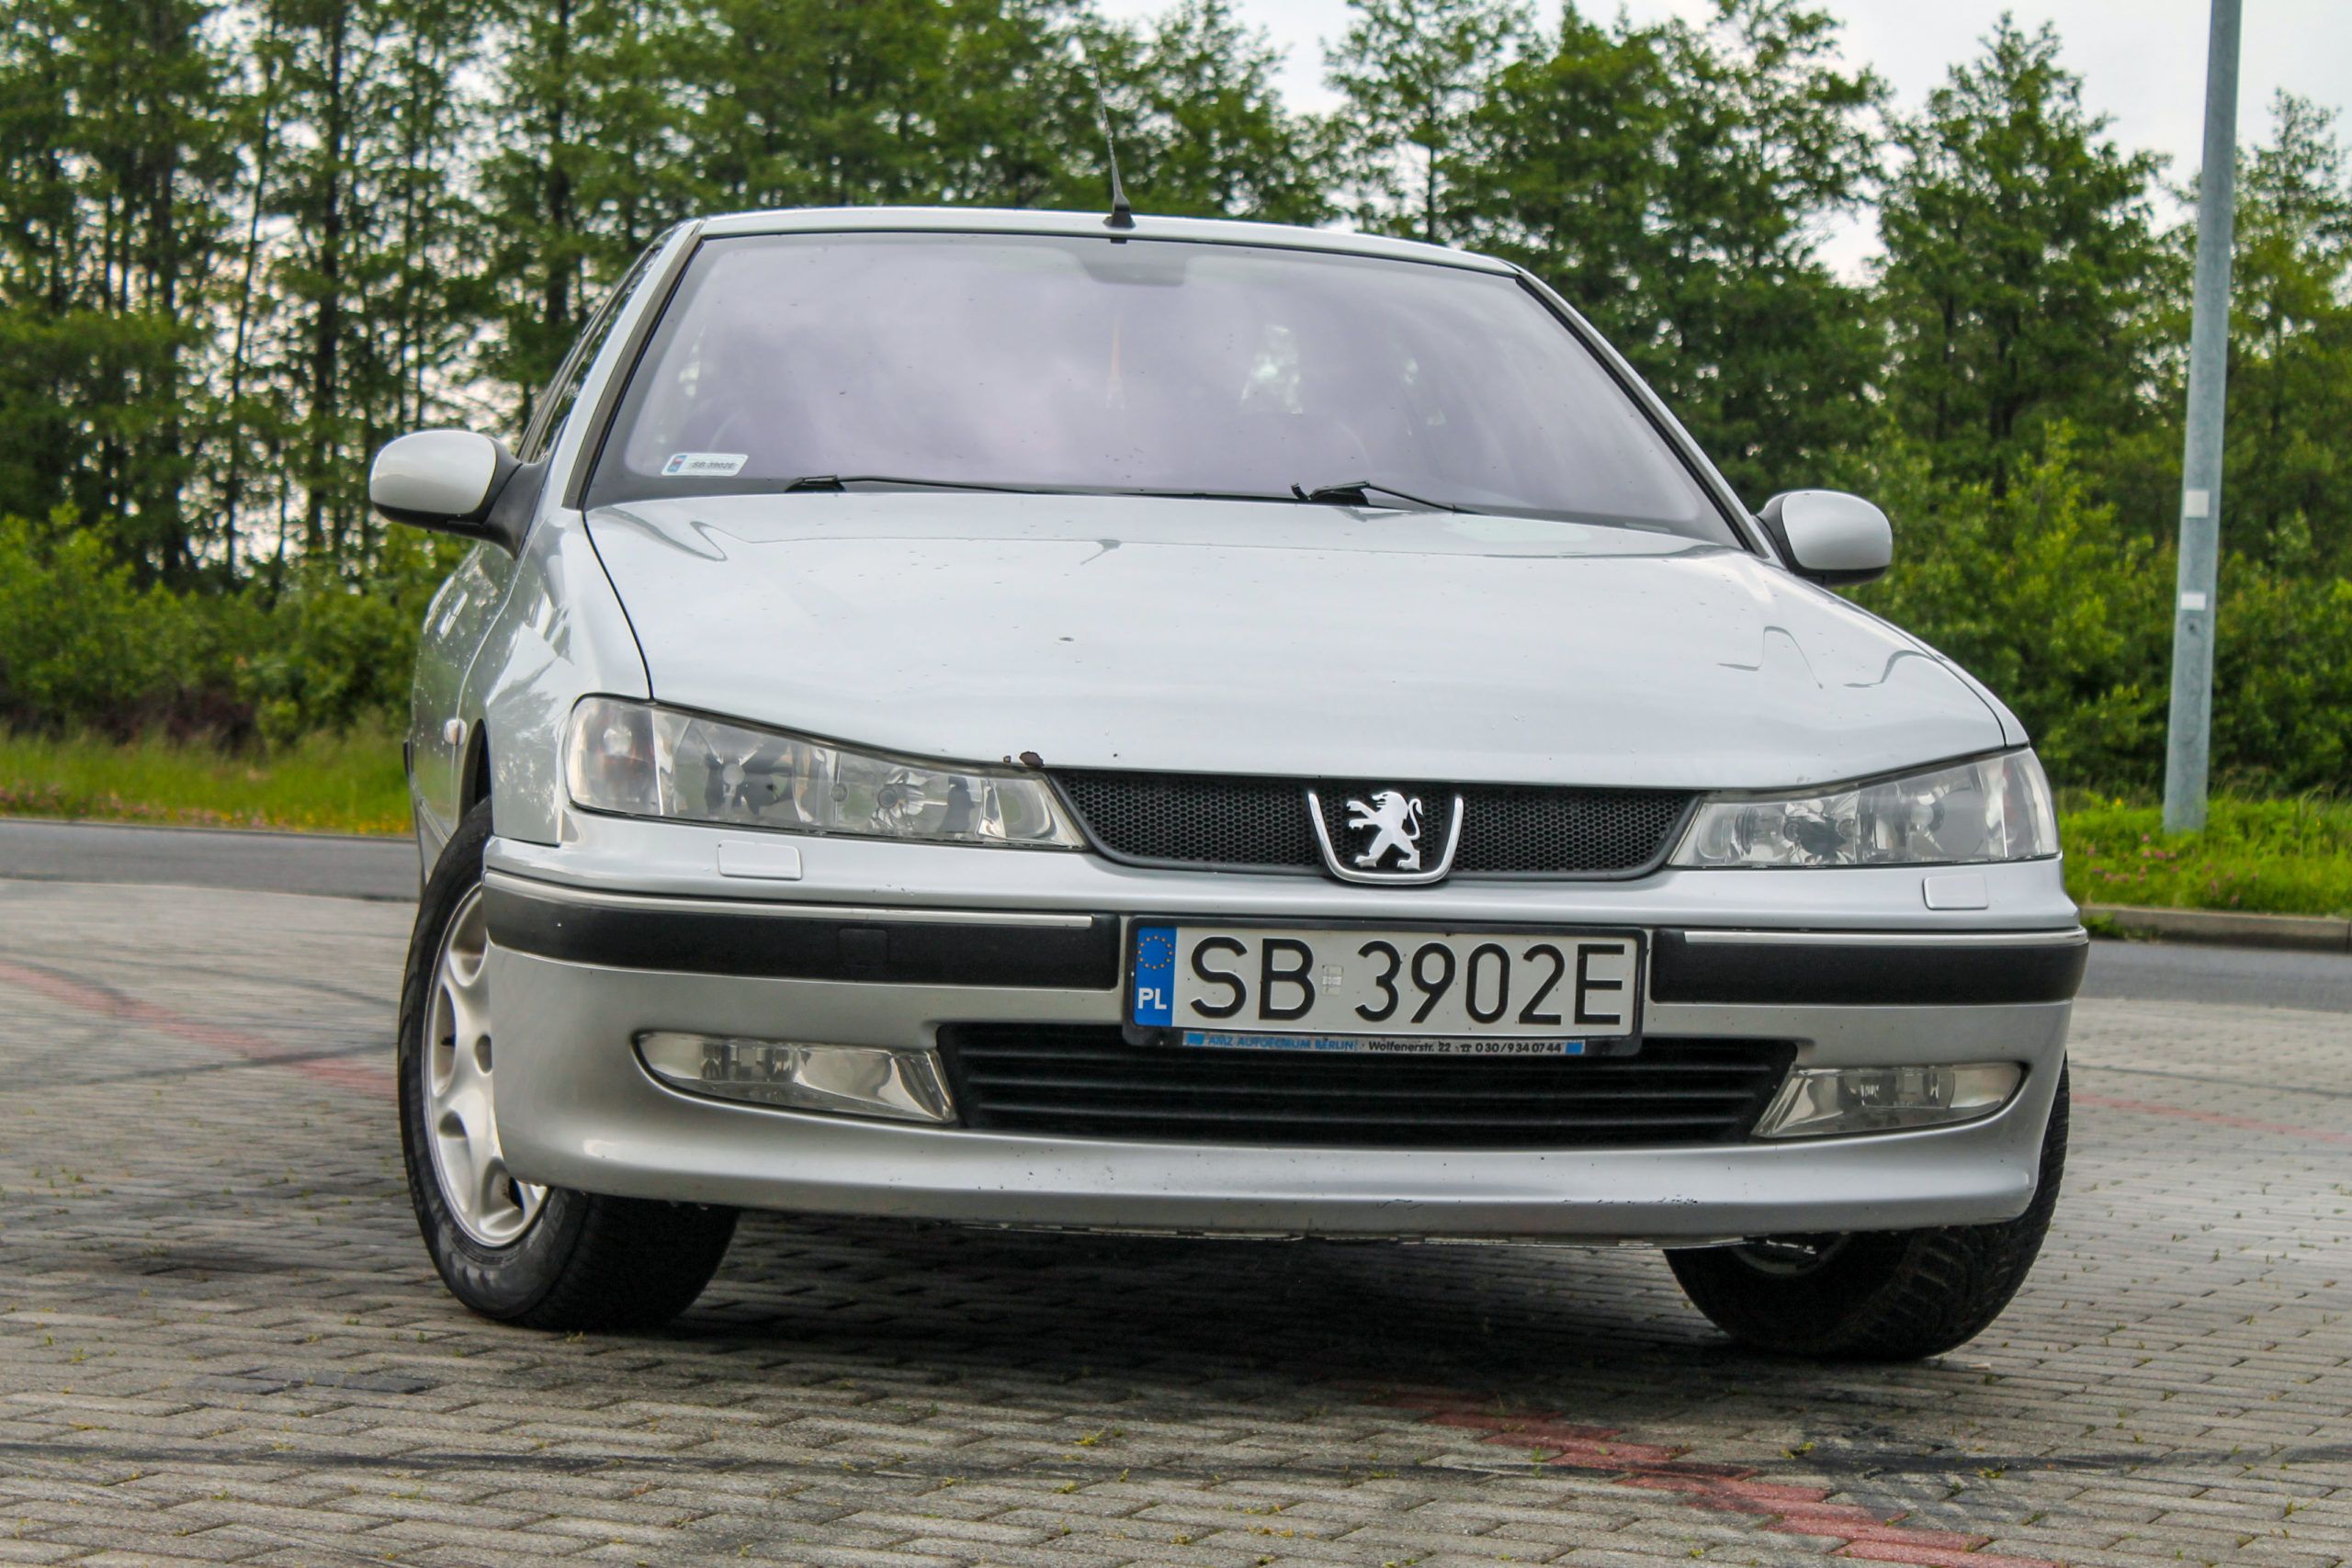 Używany Peugeot 406 3.0 V6 207 KM wyjątkowy egzemplarz z